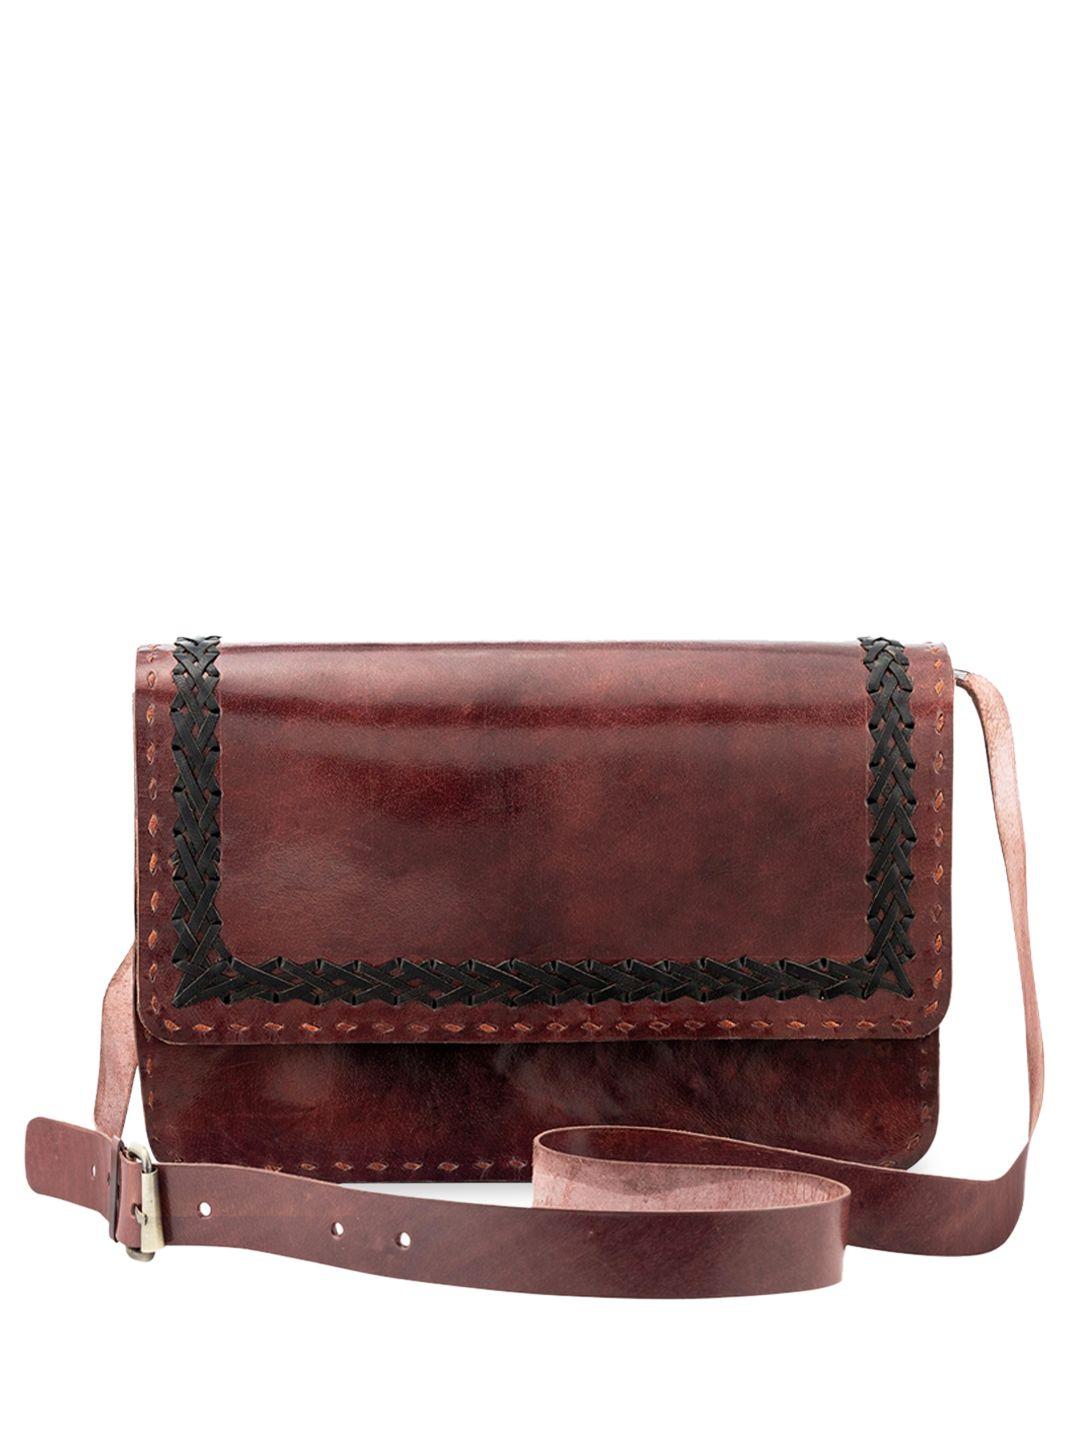 goatter women textured genuine leather sling bag